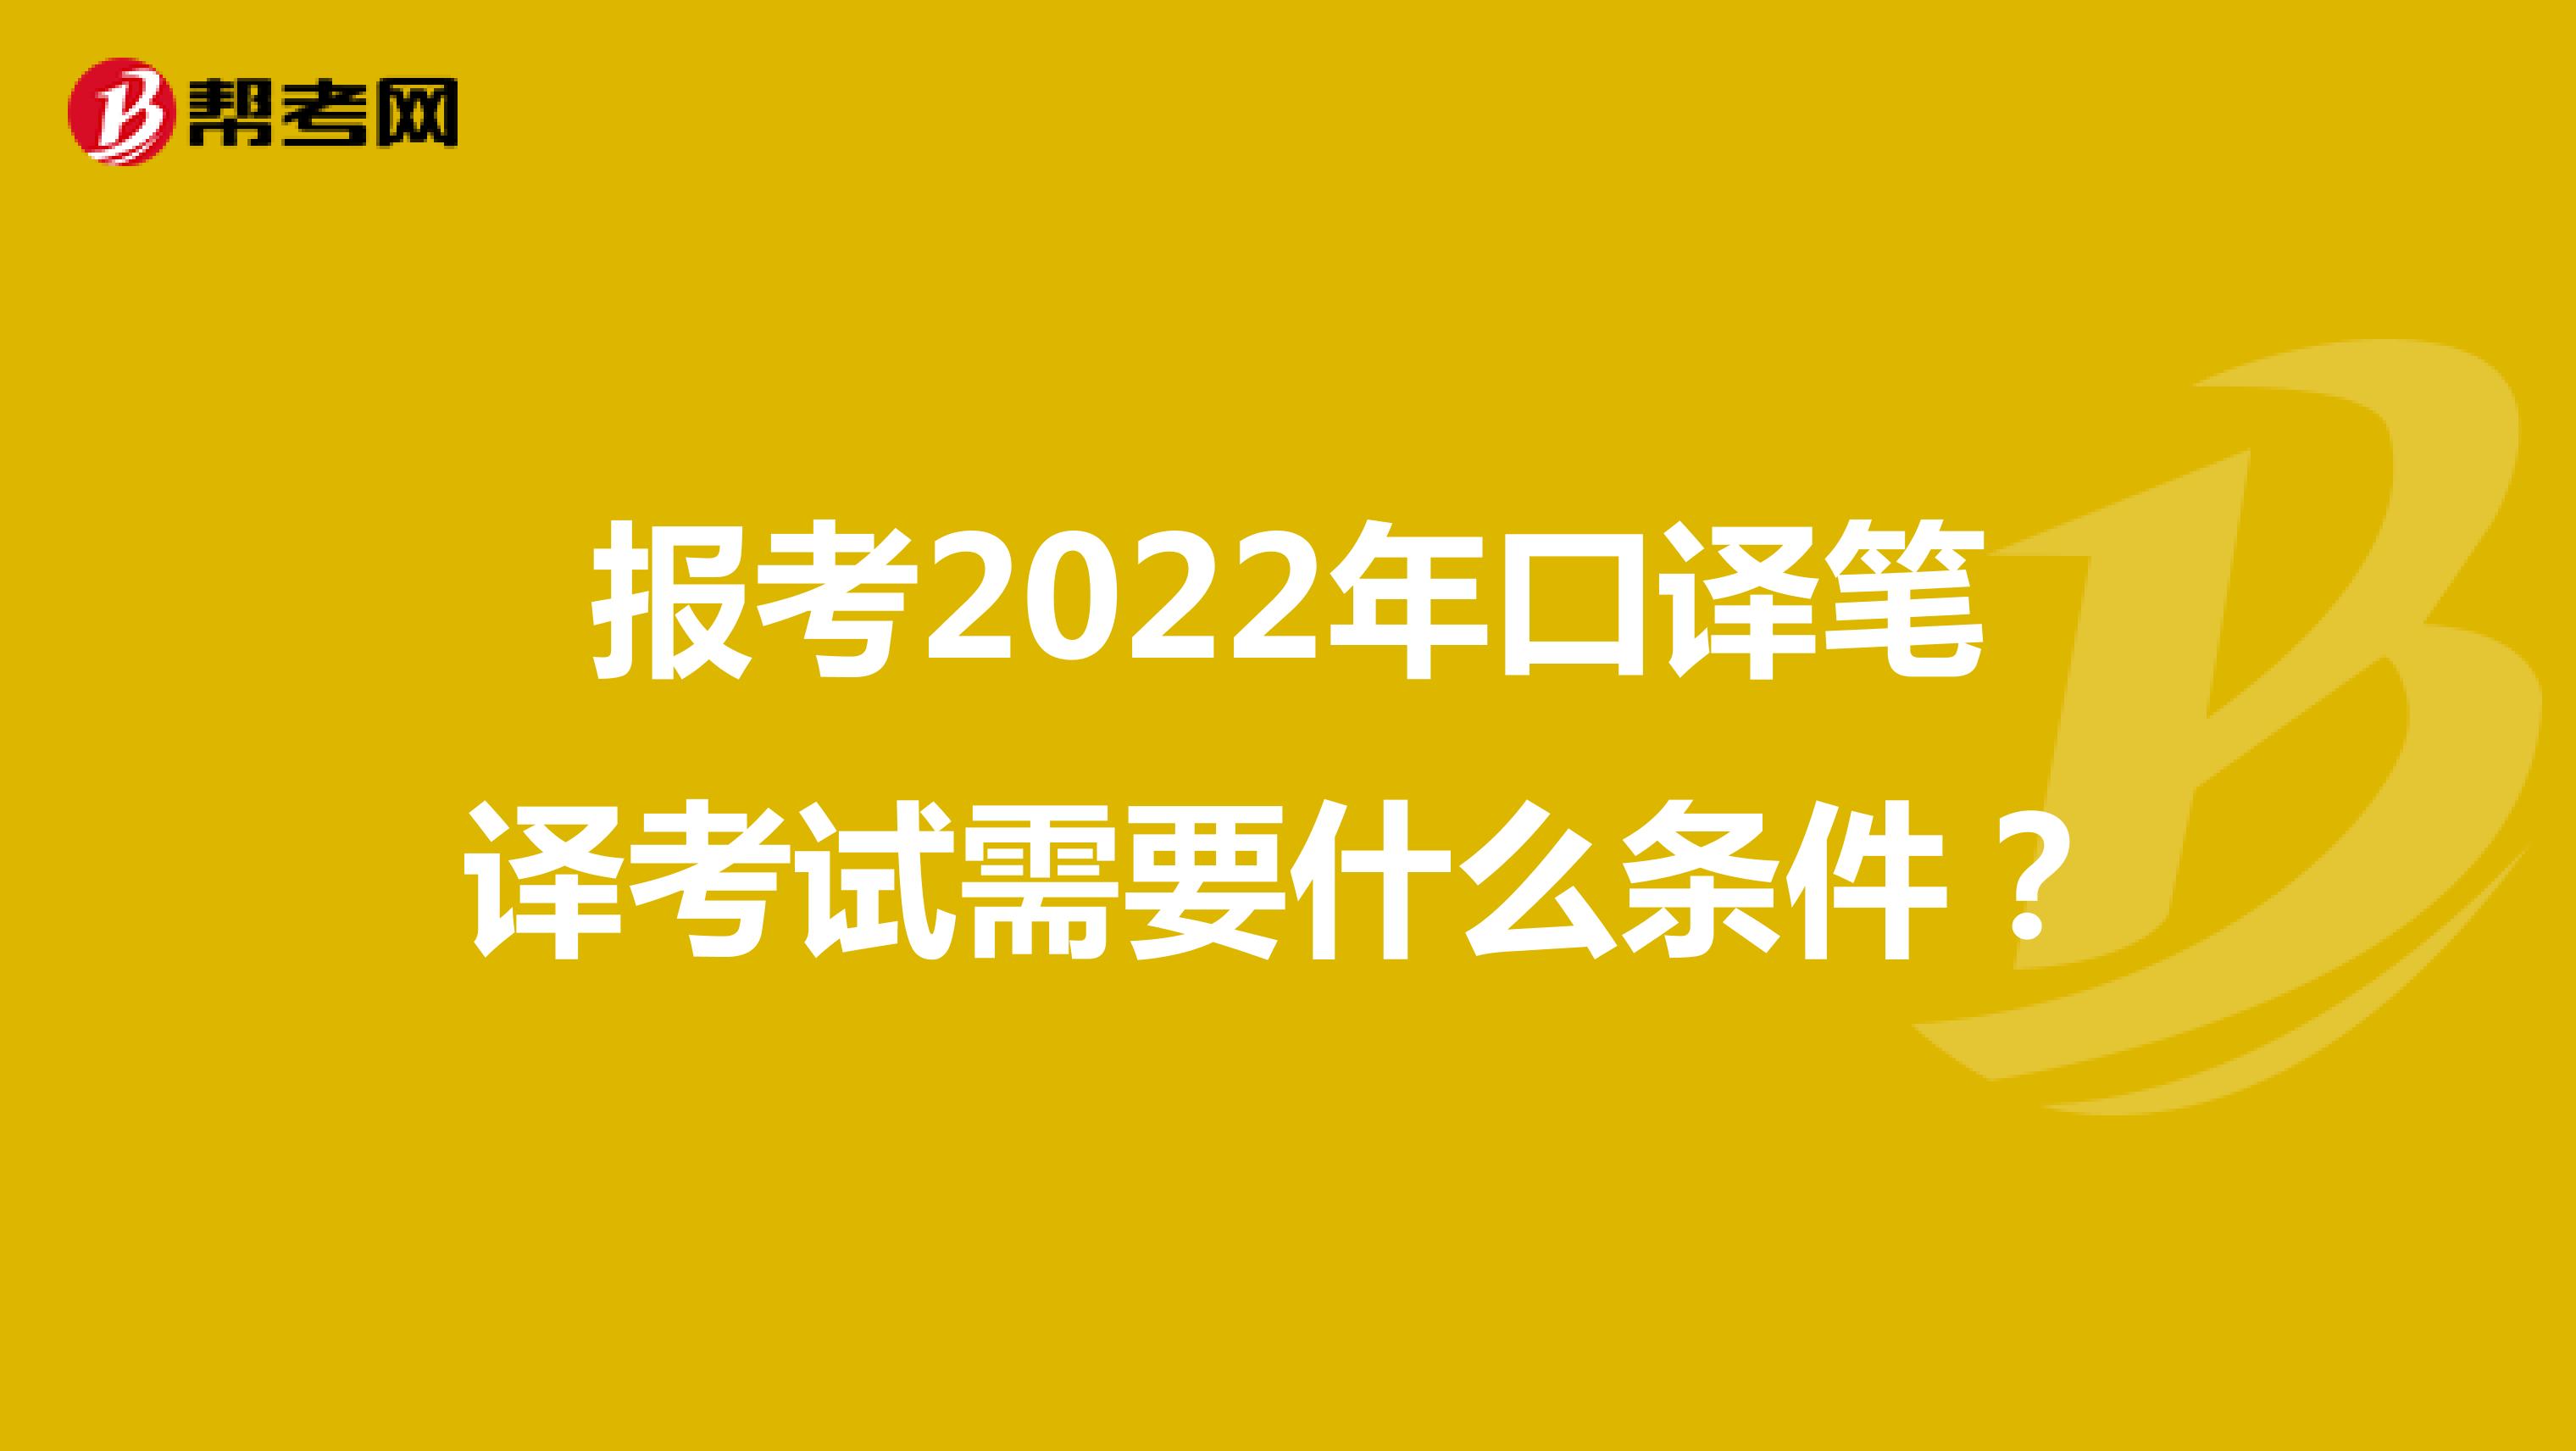 报考2022年口译笔译考试需要什么条件？